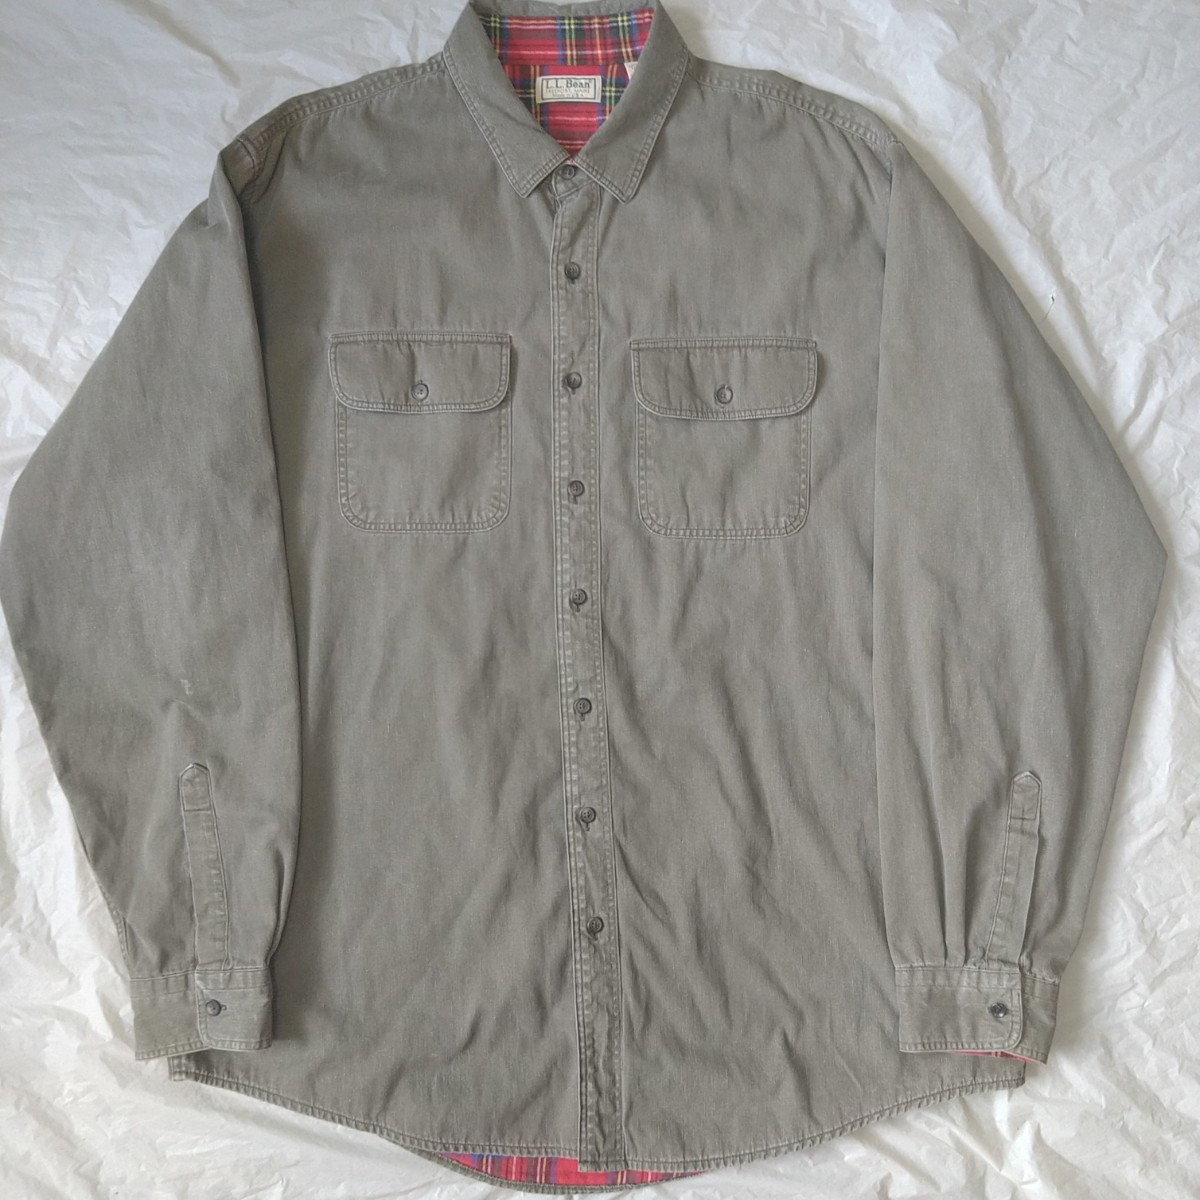 90s L.L.BEAN USA製 ヴィンテージ 裏地フランネル ワークシャツ ラインドハリケーンシャツ XL オーバーサイズ オールド アウトドア